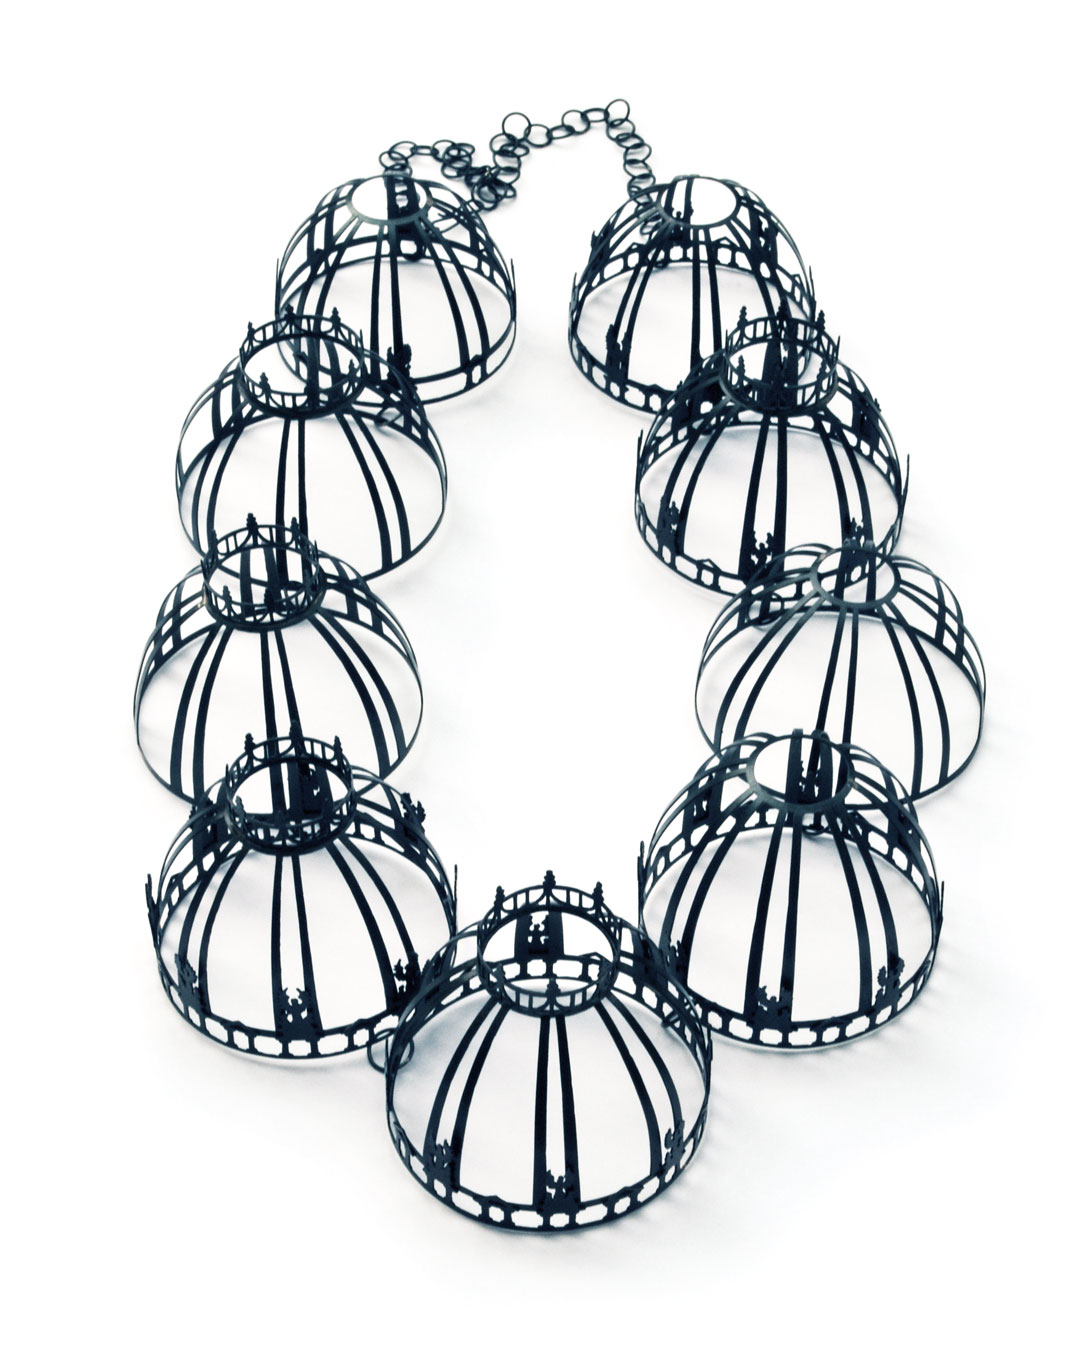 Vera Siemund, untitled, 2015, necklace; steel, 210 x 350 x 60 mm, €4850